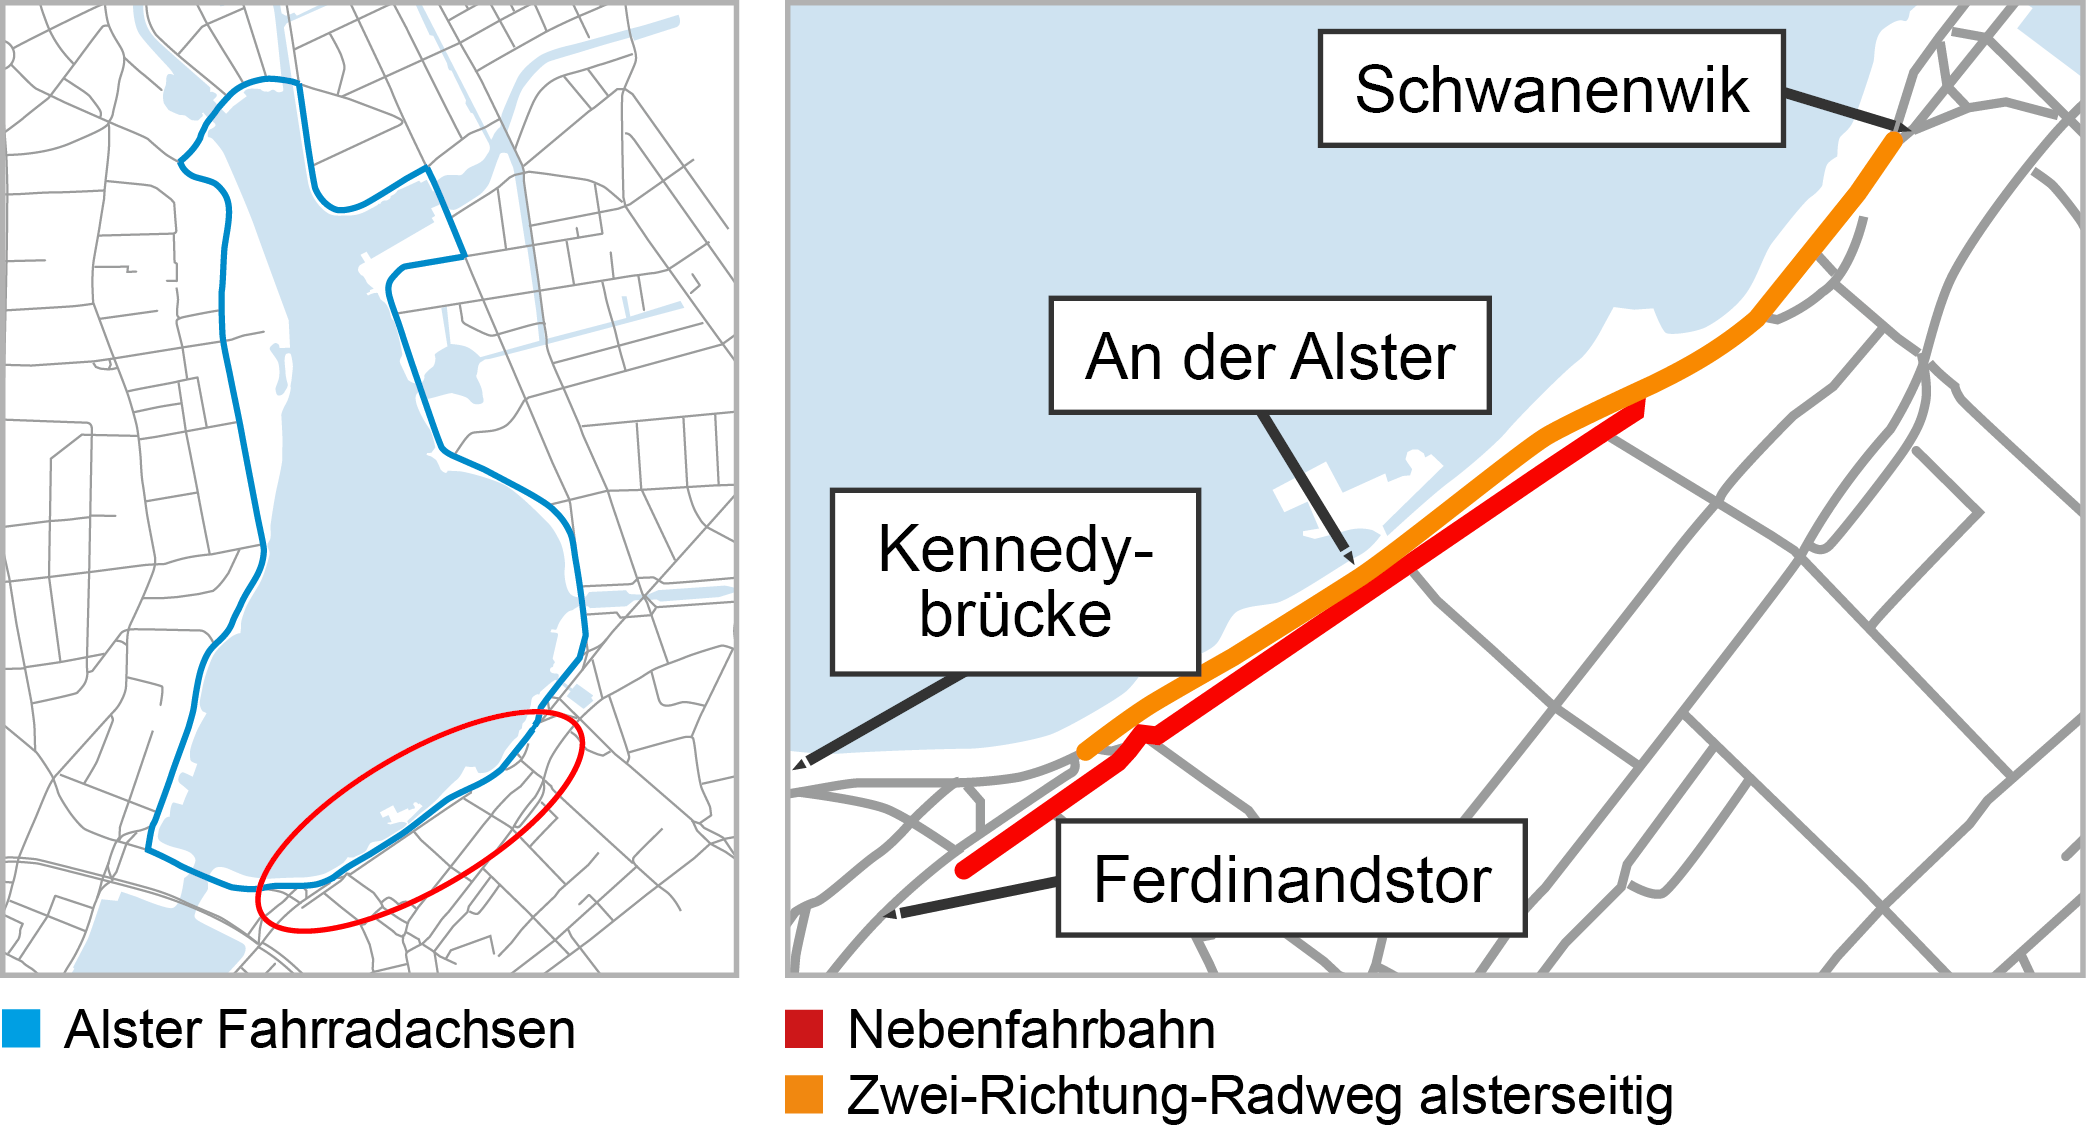 Der Planungsraum verläuft zwischen Ferdinandstor und Schwanenwik und ist Teil des Projektes "Alster Fahrradachsen"